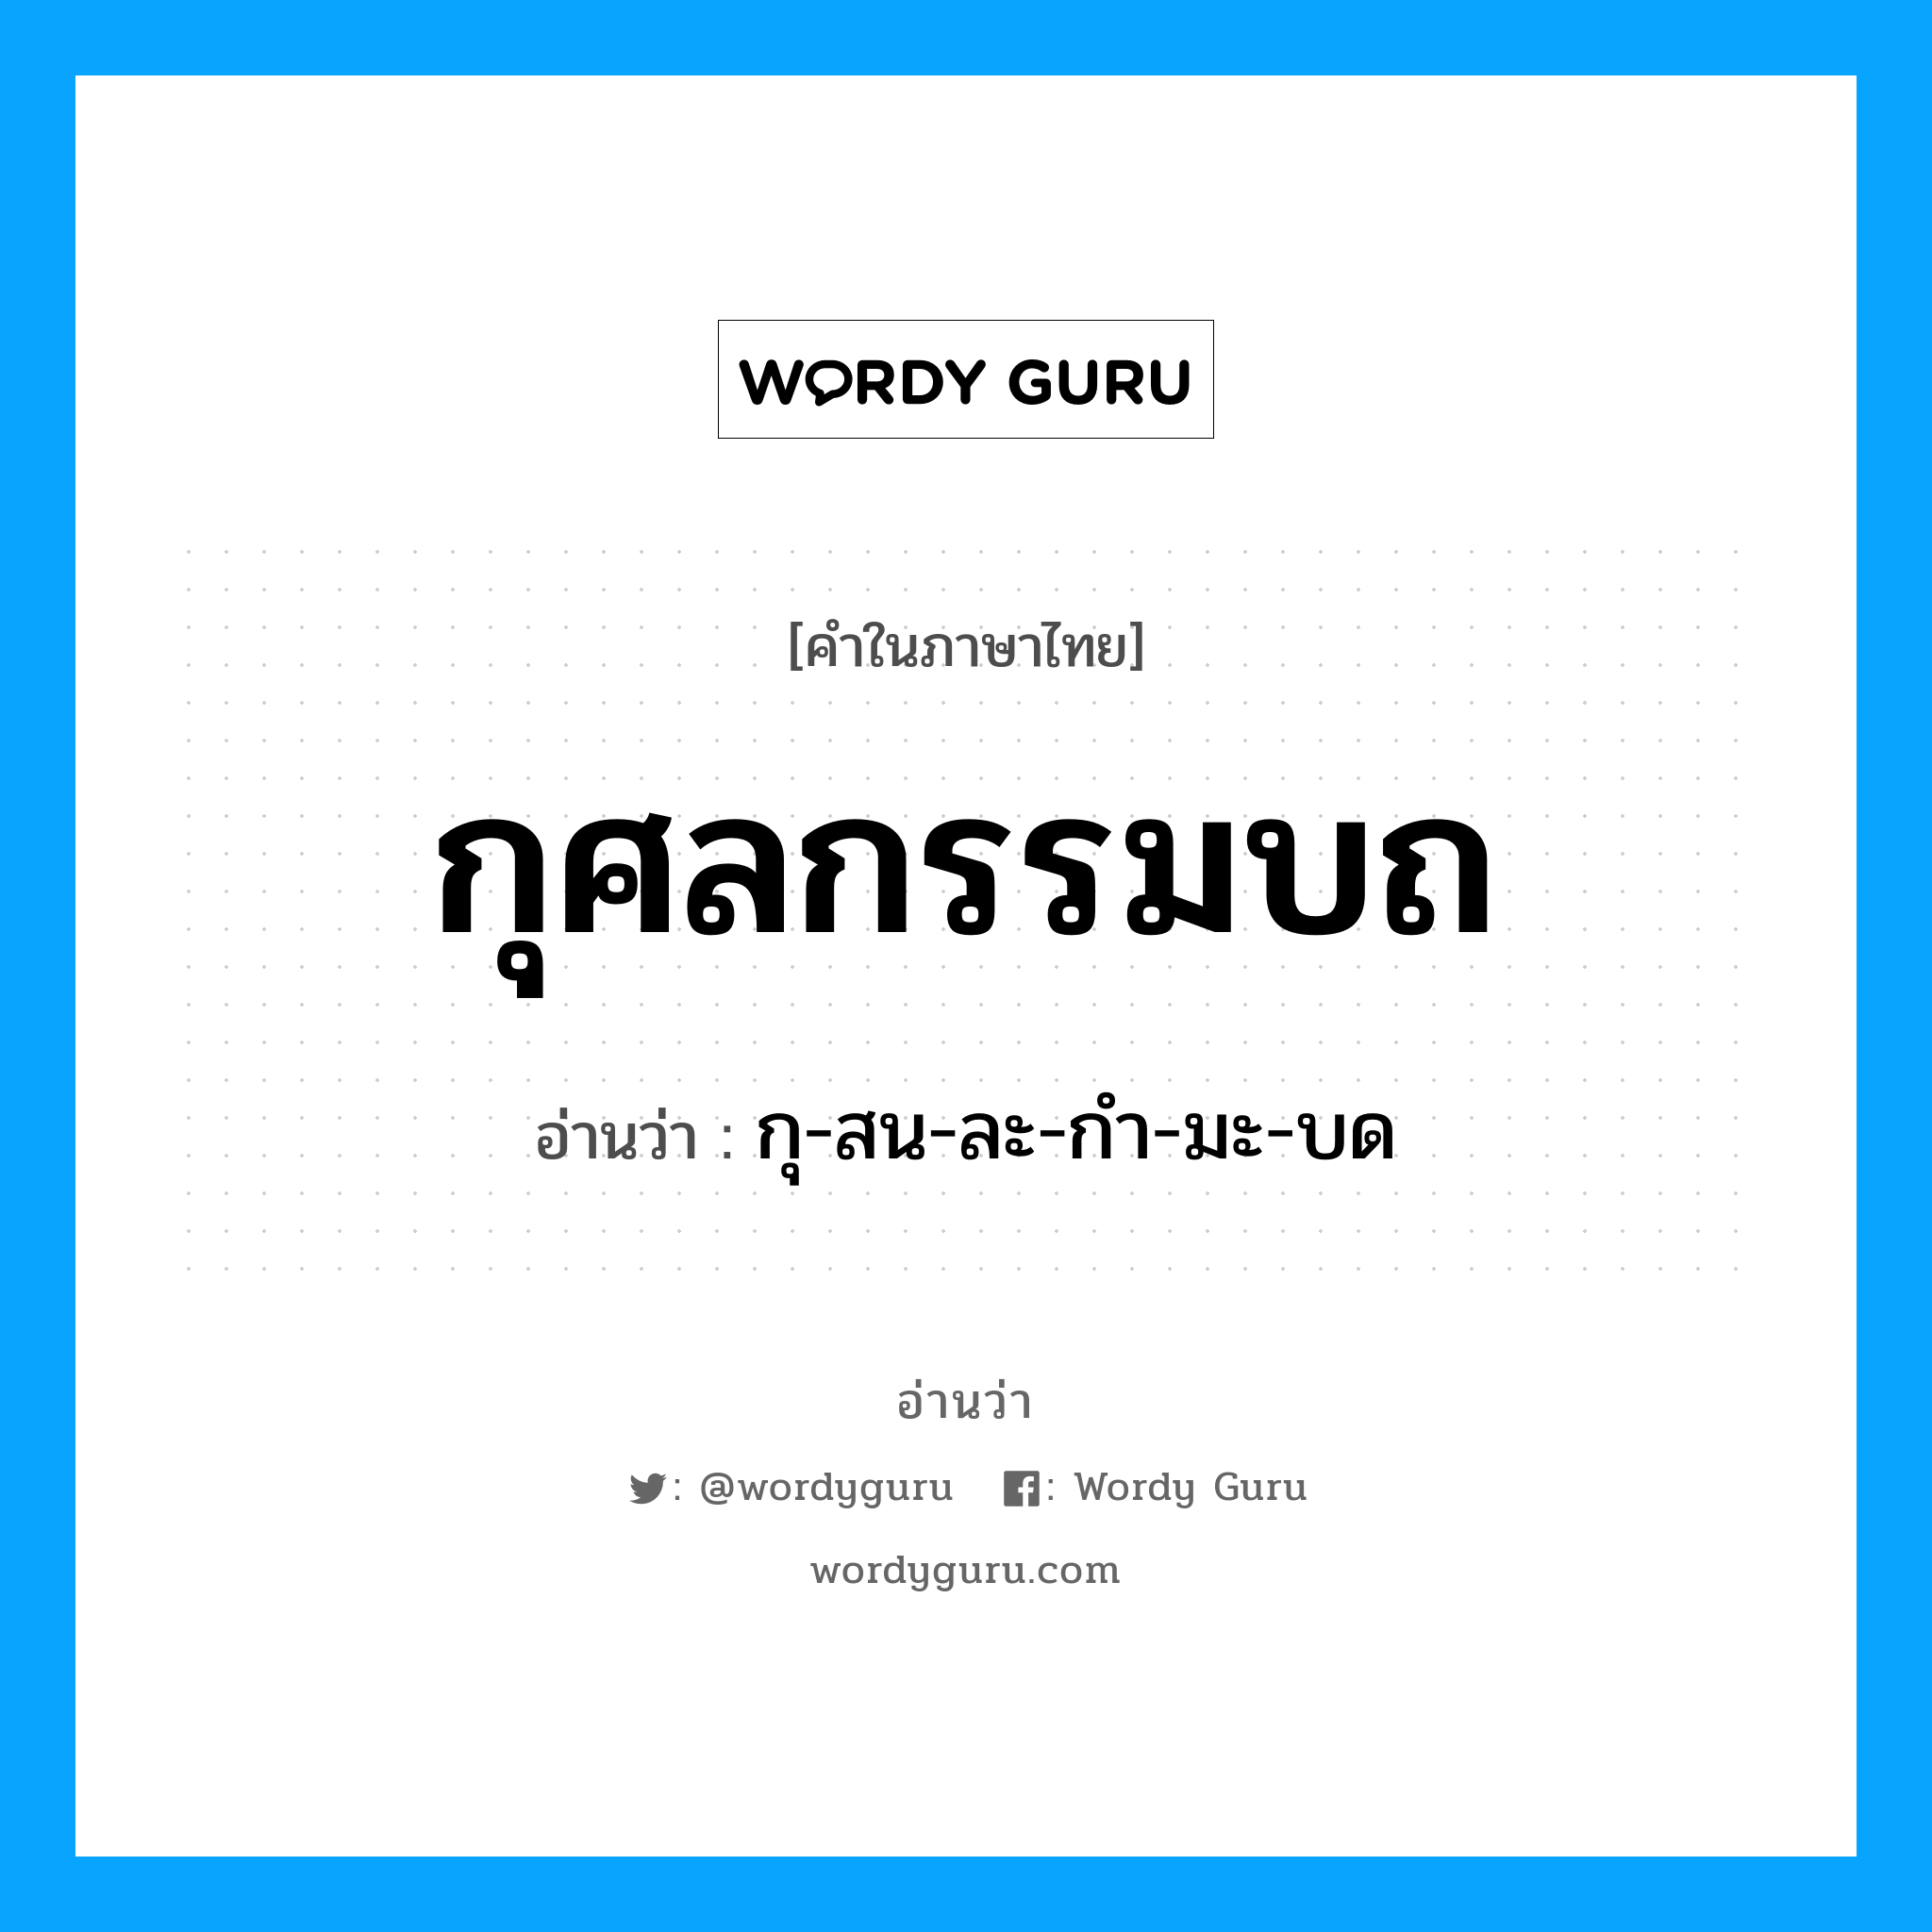 กุ-สน-ละ-กํา-มะ-บด เป็นคำอ่านของคำไหน?, คำในภาษาไทย กุ-สน-ละ-กํา-มะ-บด อ่านว่า กุศลกรรมบถ